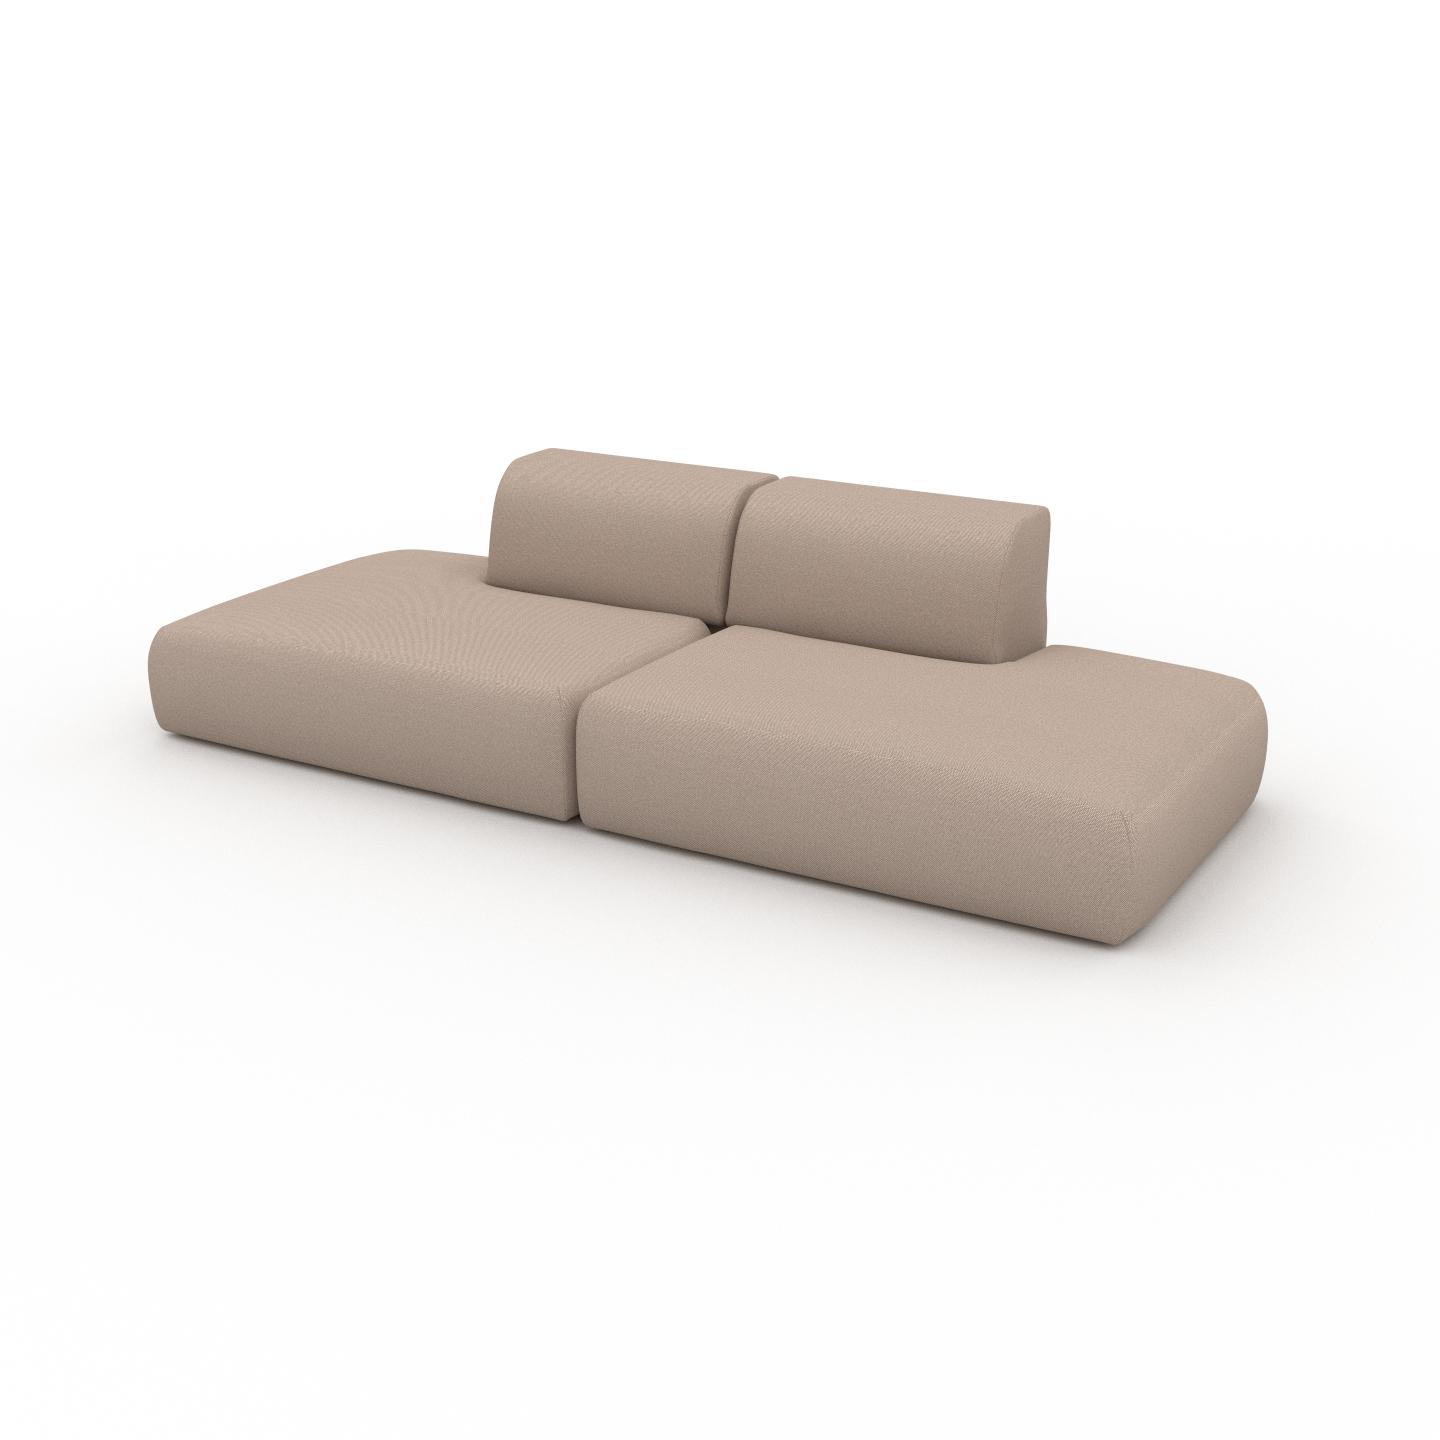 MYCS Sofa 2-Sitzer Sandbeige Feingewebe - Elegantes, gemütliches 2-Sitzer Sofa: Hochwertige Qualität, einzigartiges Design - 270 x 72 x 107 cm,...